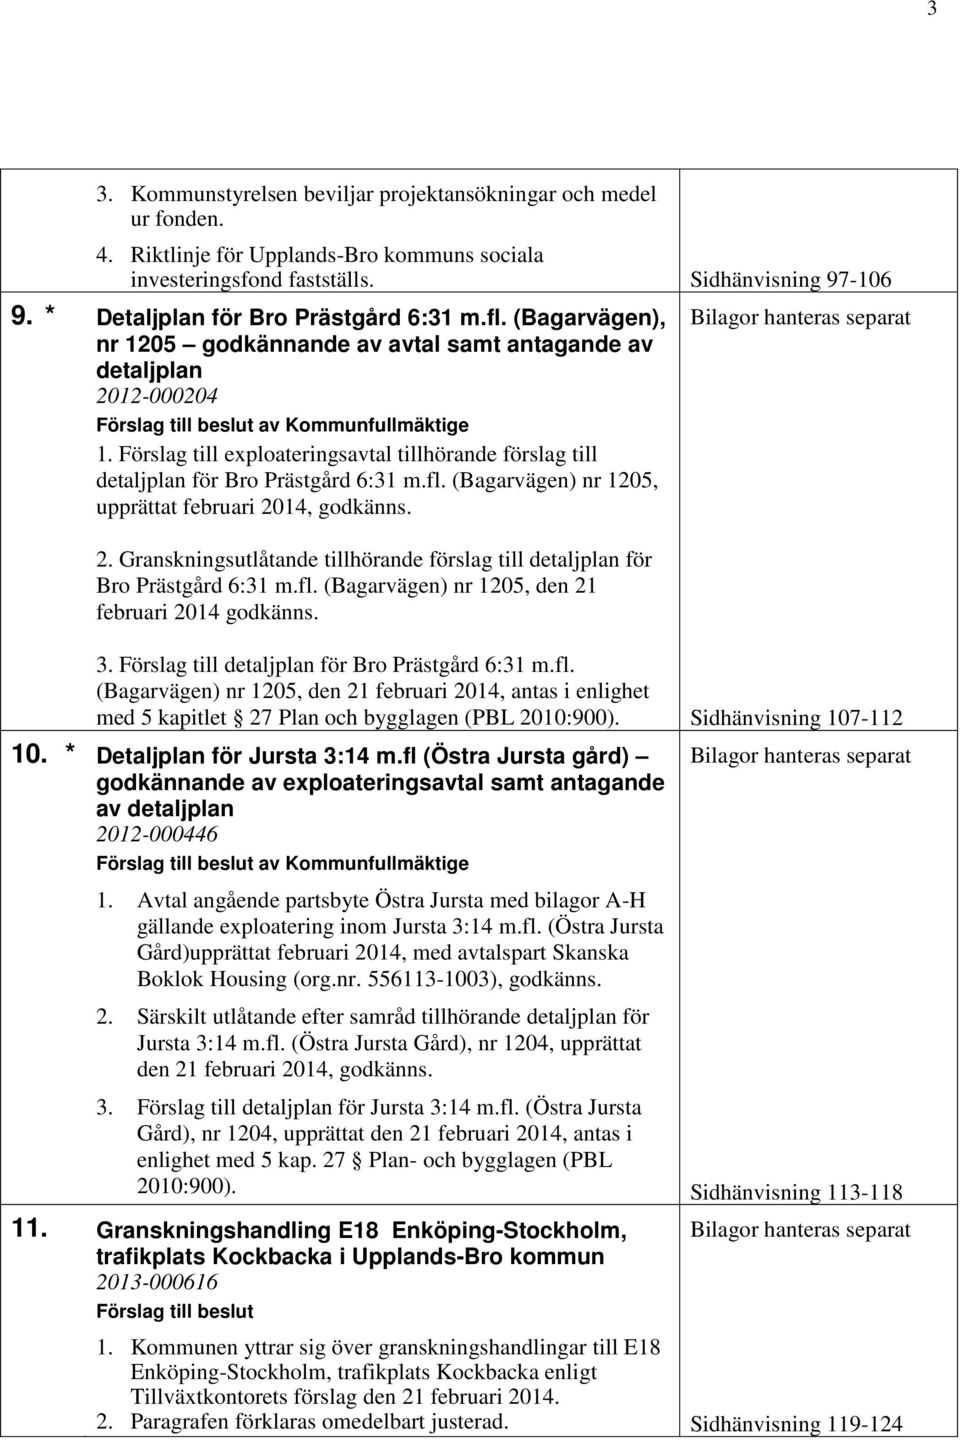 Förslag till exploateringsavtal tillhörande förslag till detaljplan för Bro Prästgård 6:31 m.fl. (Bagarvägen) nr 1205, upprättat februari 20